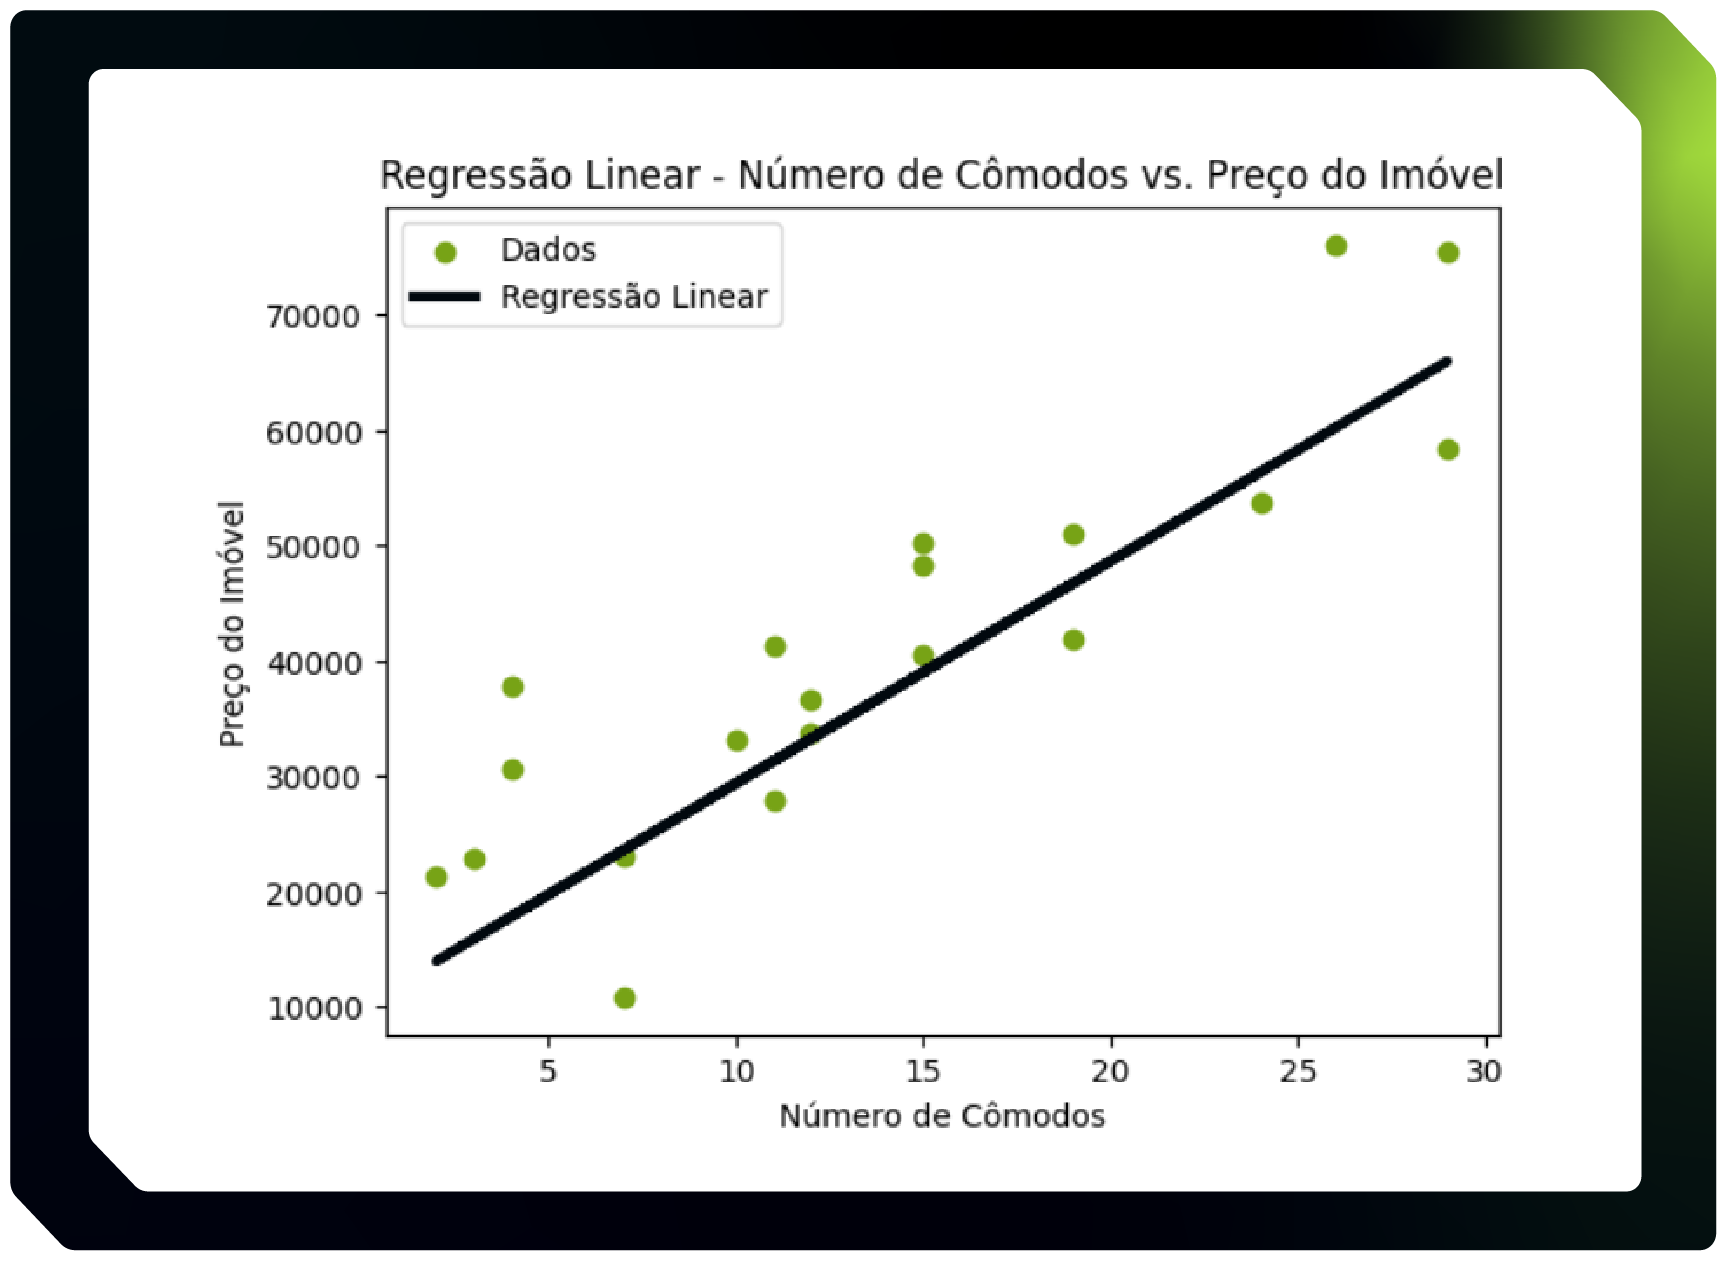 Alt text: Imagem que representa um Gráfico titulado “Regressão Linear - Número de Cômodos vs. Preço do Imóvel”. No eixo X existem valores de 0 a 30 espaçados de 5 em 5, intitulado  “Número de Cômodos”. No eixo Y existem valores de 0 até 8000 espaçados de 10000 em 10000, e é intitulado “Preço do Imóvel”. No gráfico existe uma reta na cor preta, chamada “Regressão Linear”, que está próxima de diversos pontos verdes, chamado “Dados”, a reta e os pontos adotam um crescimento linear positivo. A reta inicia próxima a origem do gráfico e termina próxima ao canto superior esquerdo.